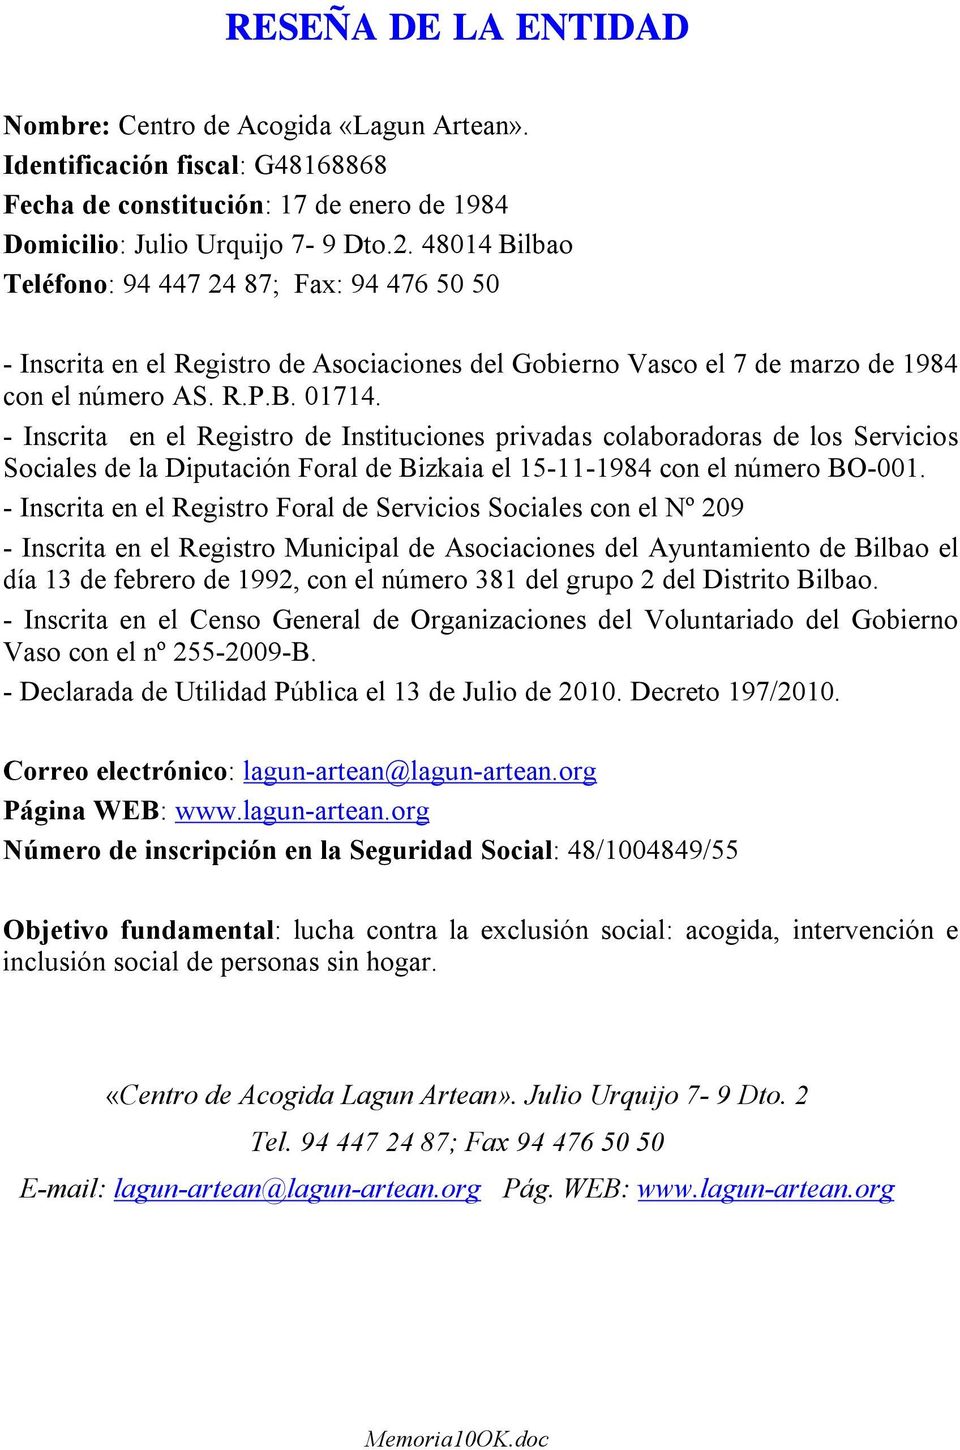 - Inscrita en el Registro de Instituciones privadas colaboradoras de los Servicios Sociales de la Diputación Foral de Bizkaia el 15-11-1984 con el número BO-001.